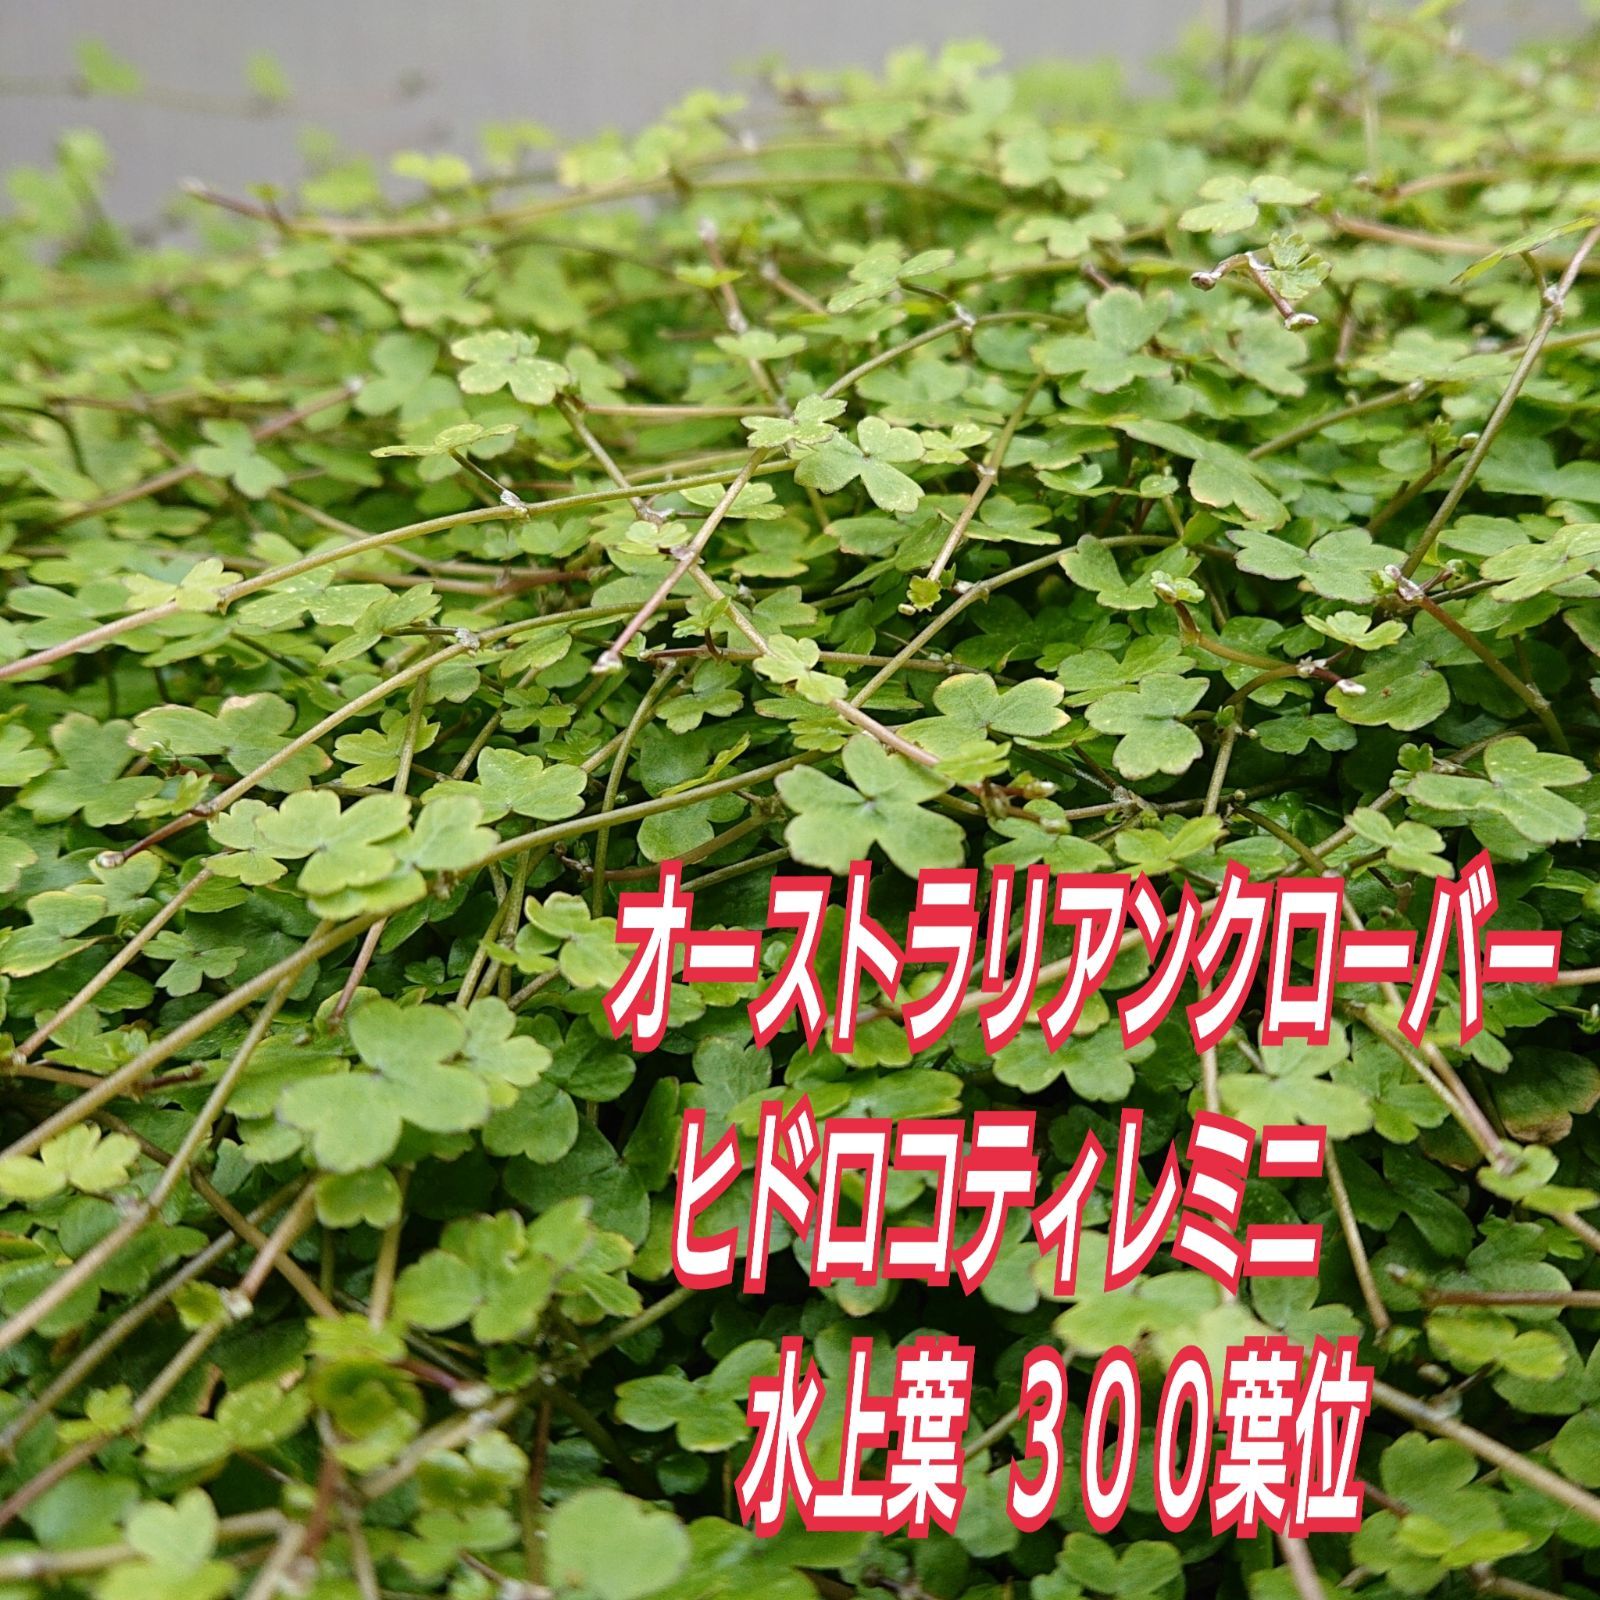 オーストラリアンクローバーミニ 30葉 - 水草育成